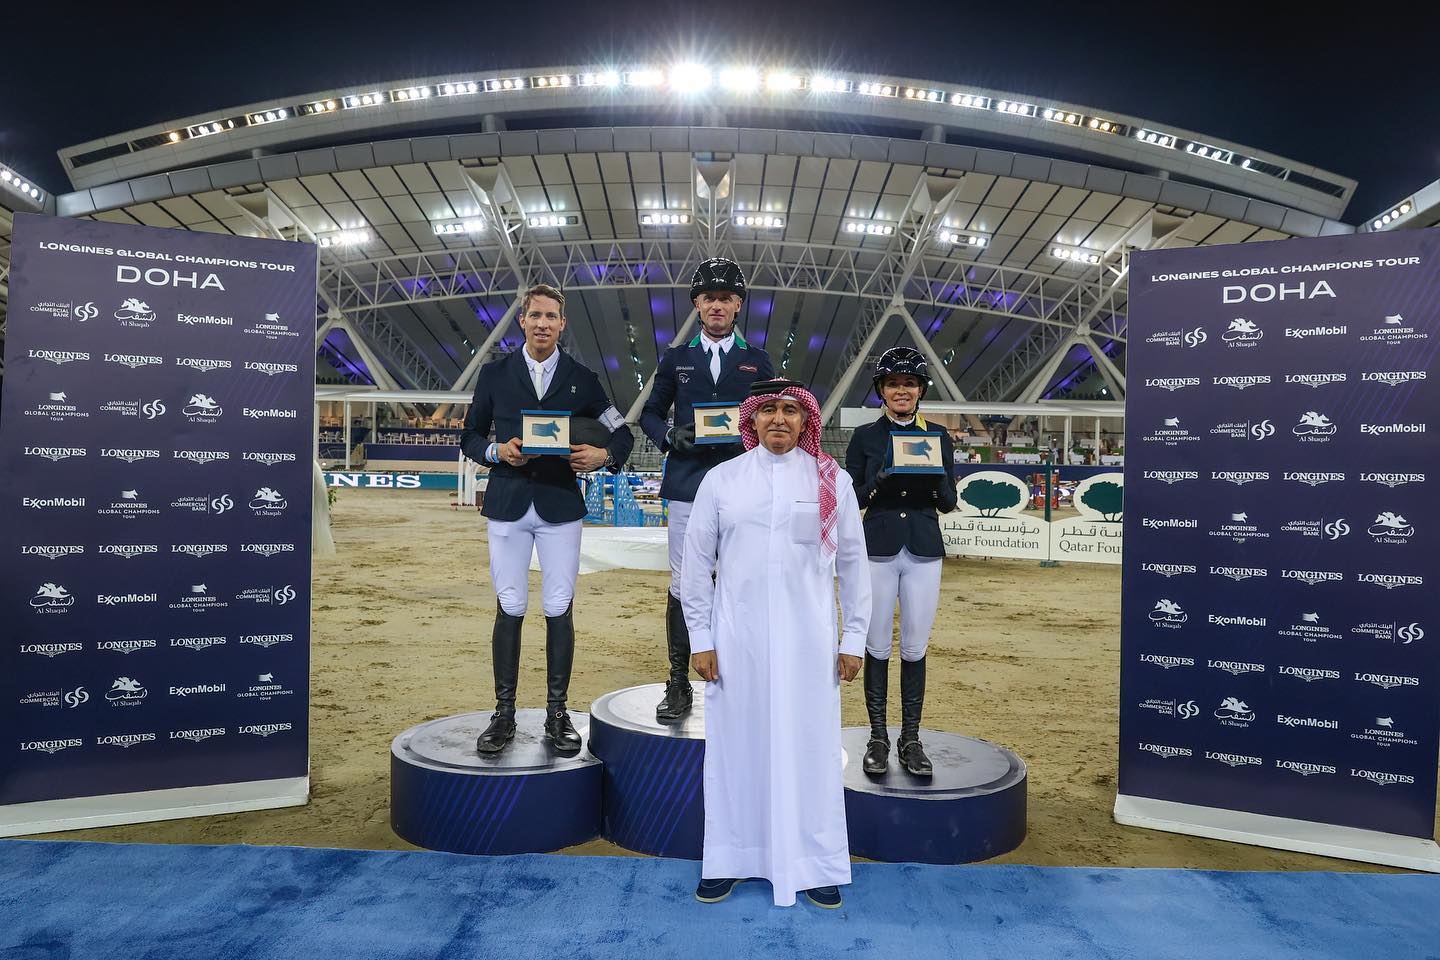 Edwina & Toulini 3rd in Doha 